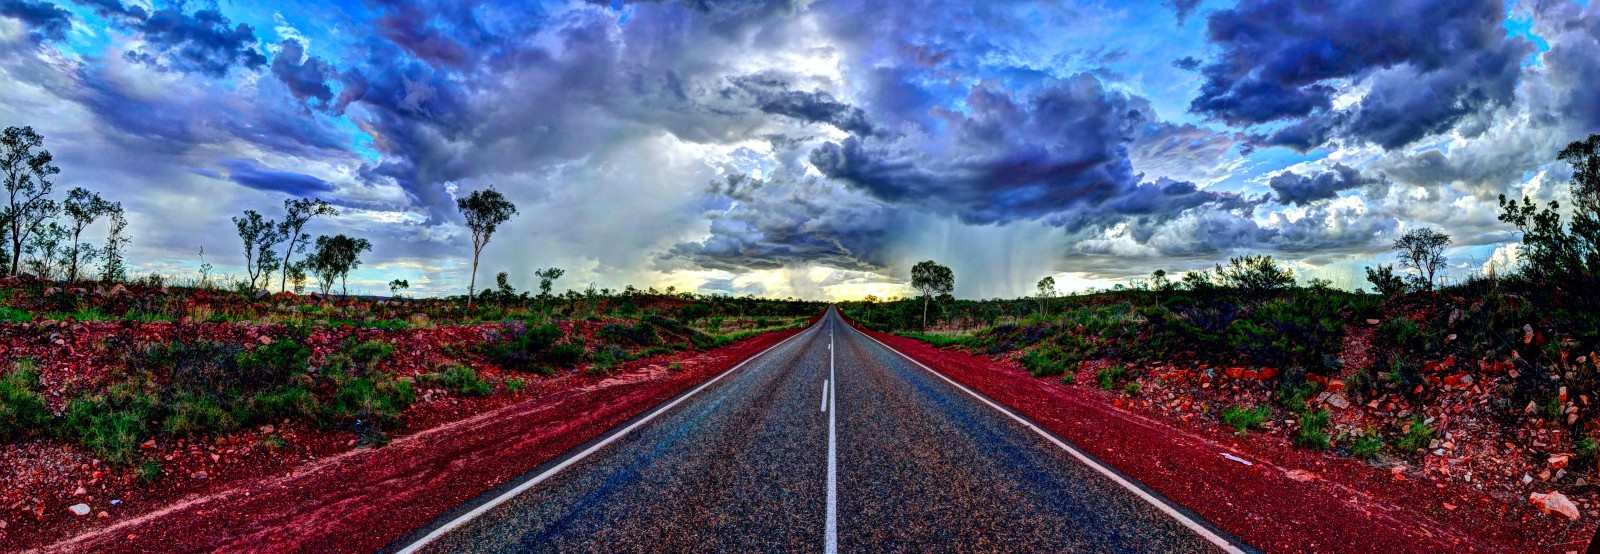 Távoli vihar Nyugat-Ausztráliában - HDR panoráma